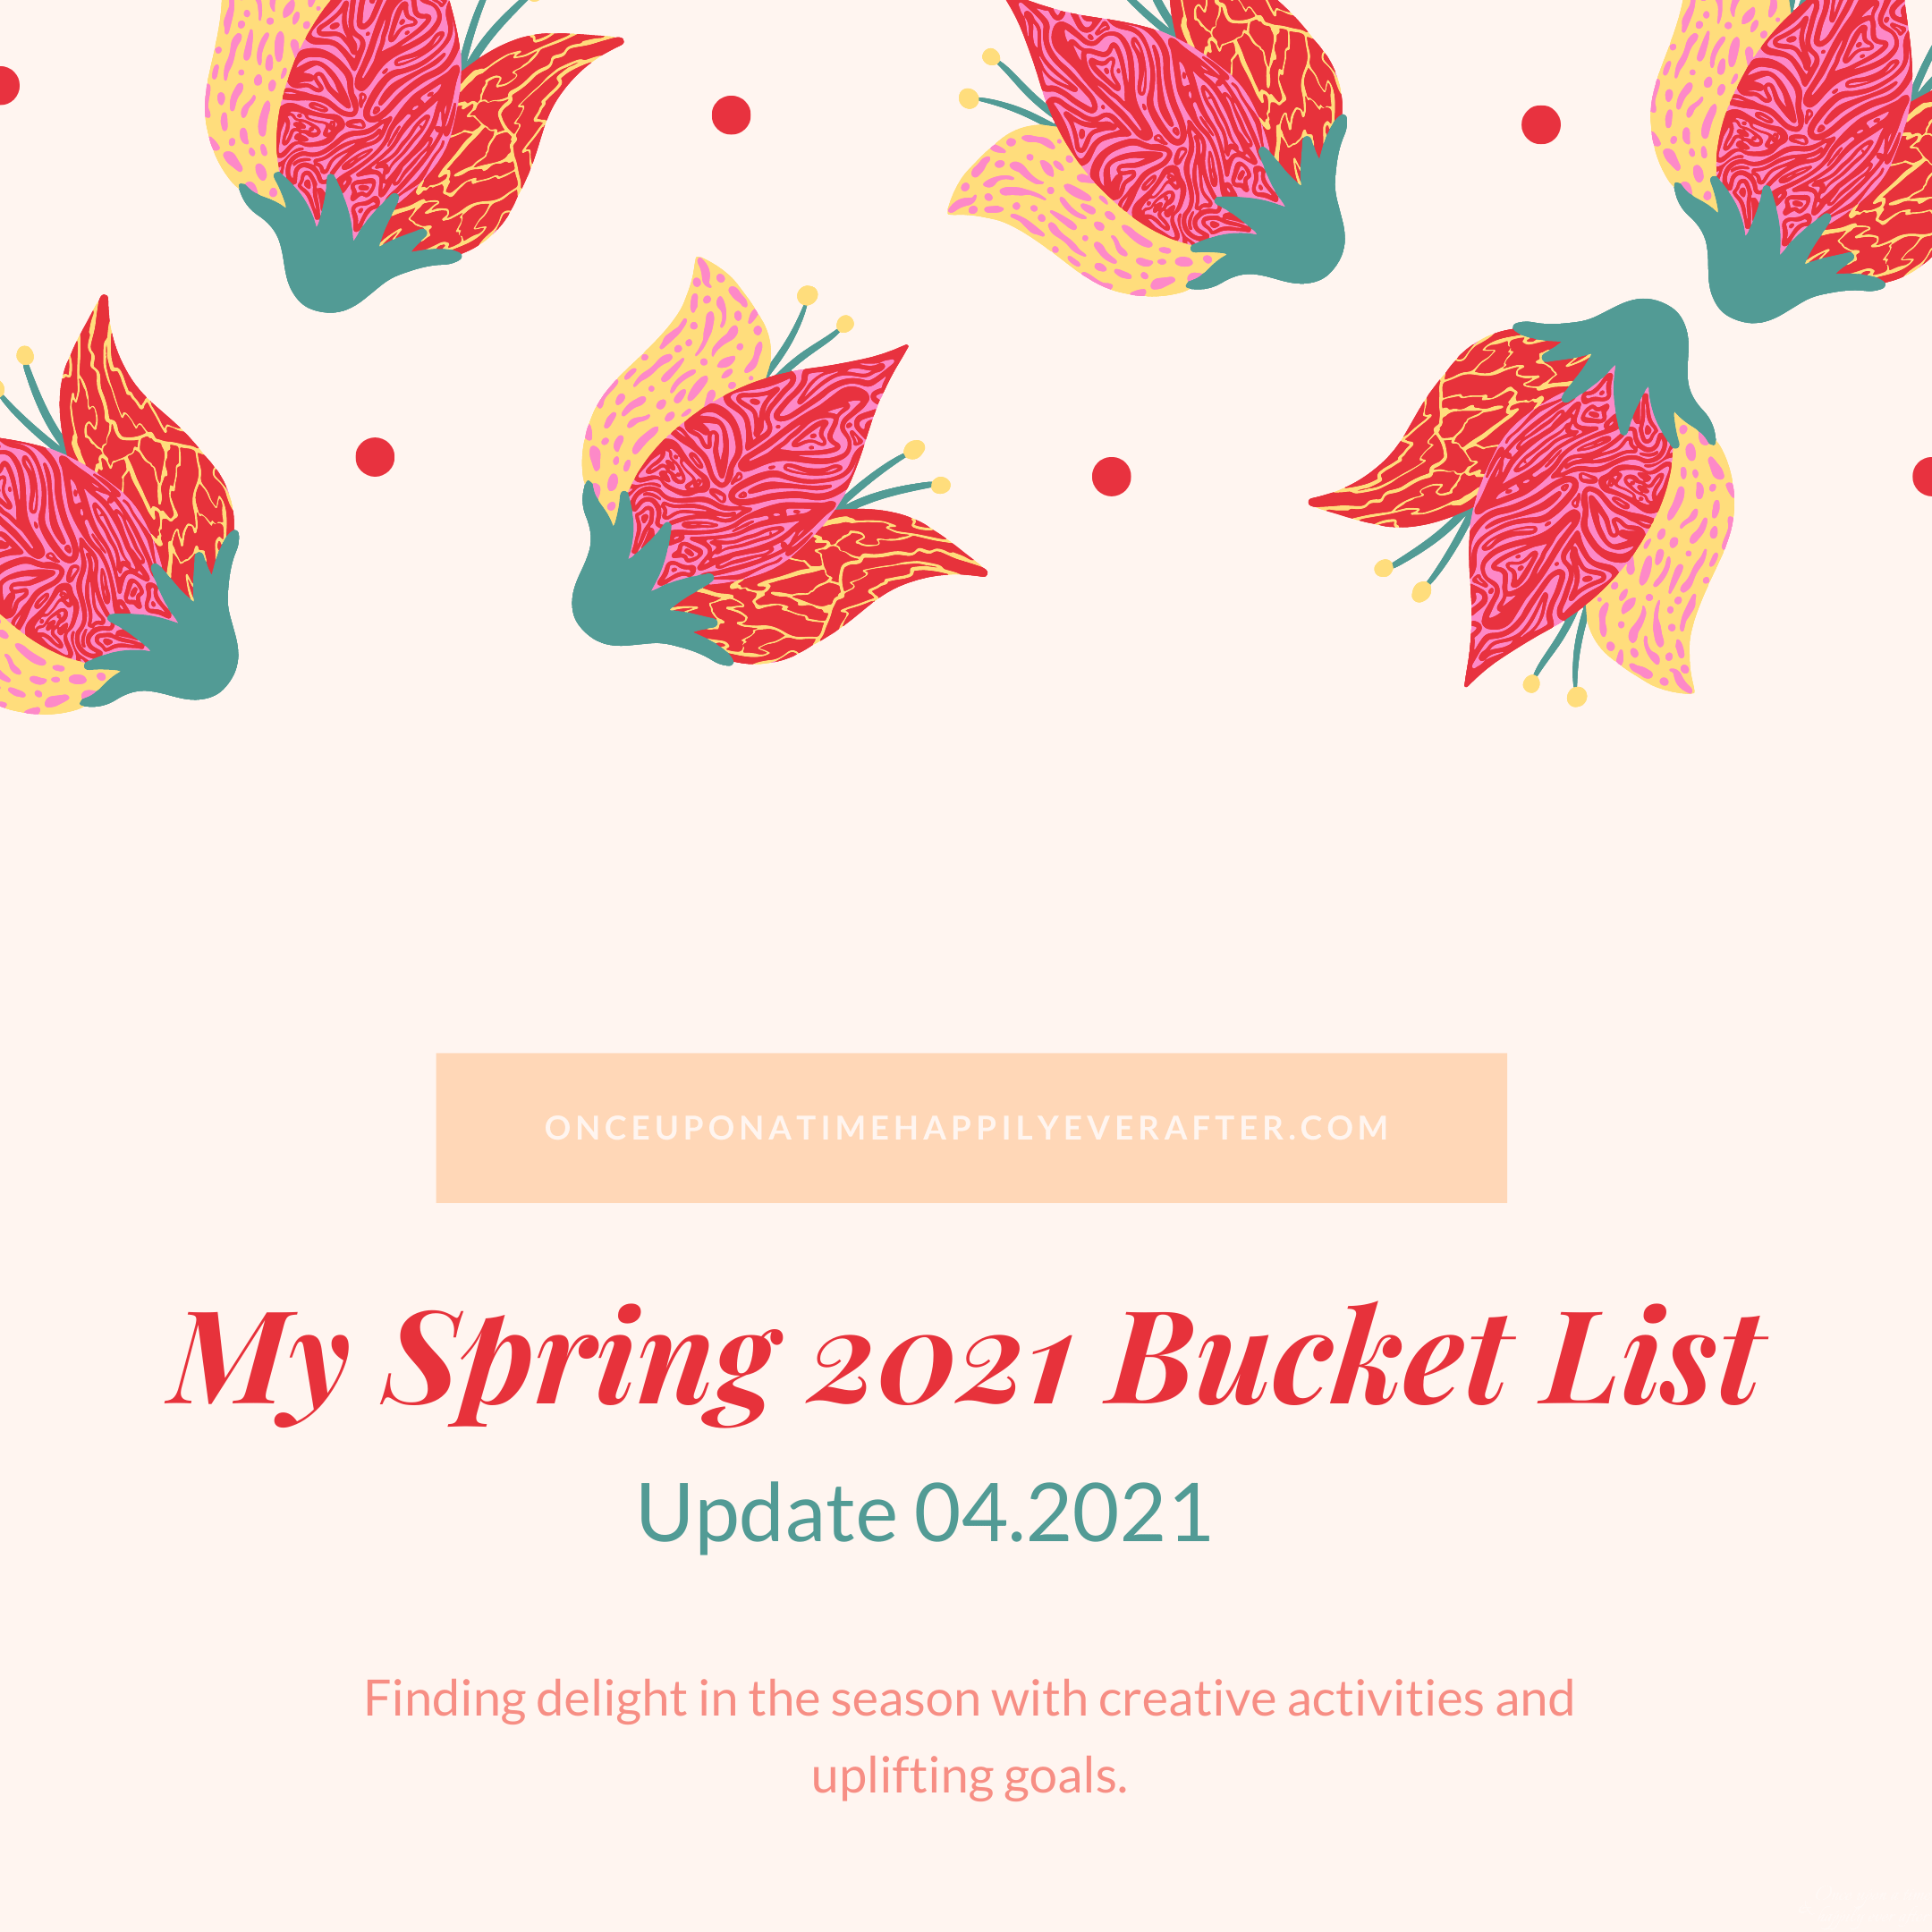 Update 04.2021: My Spring Bucket List